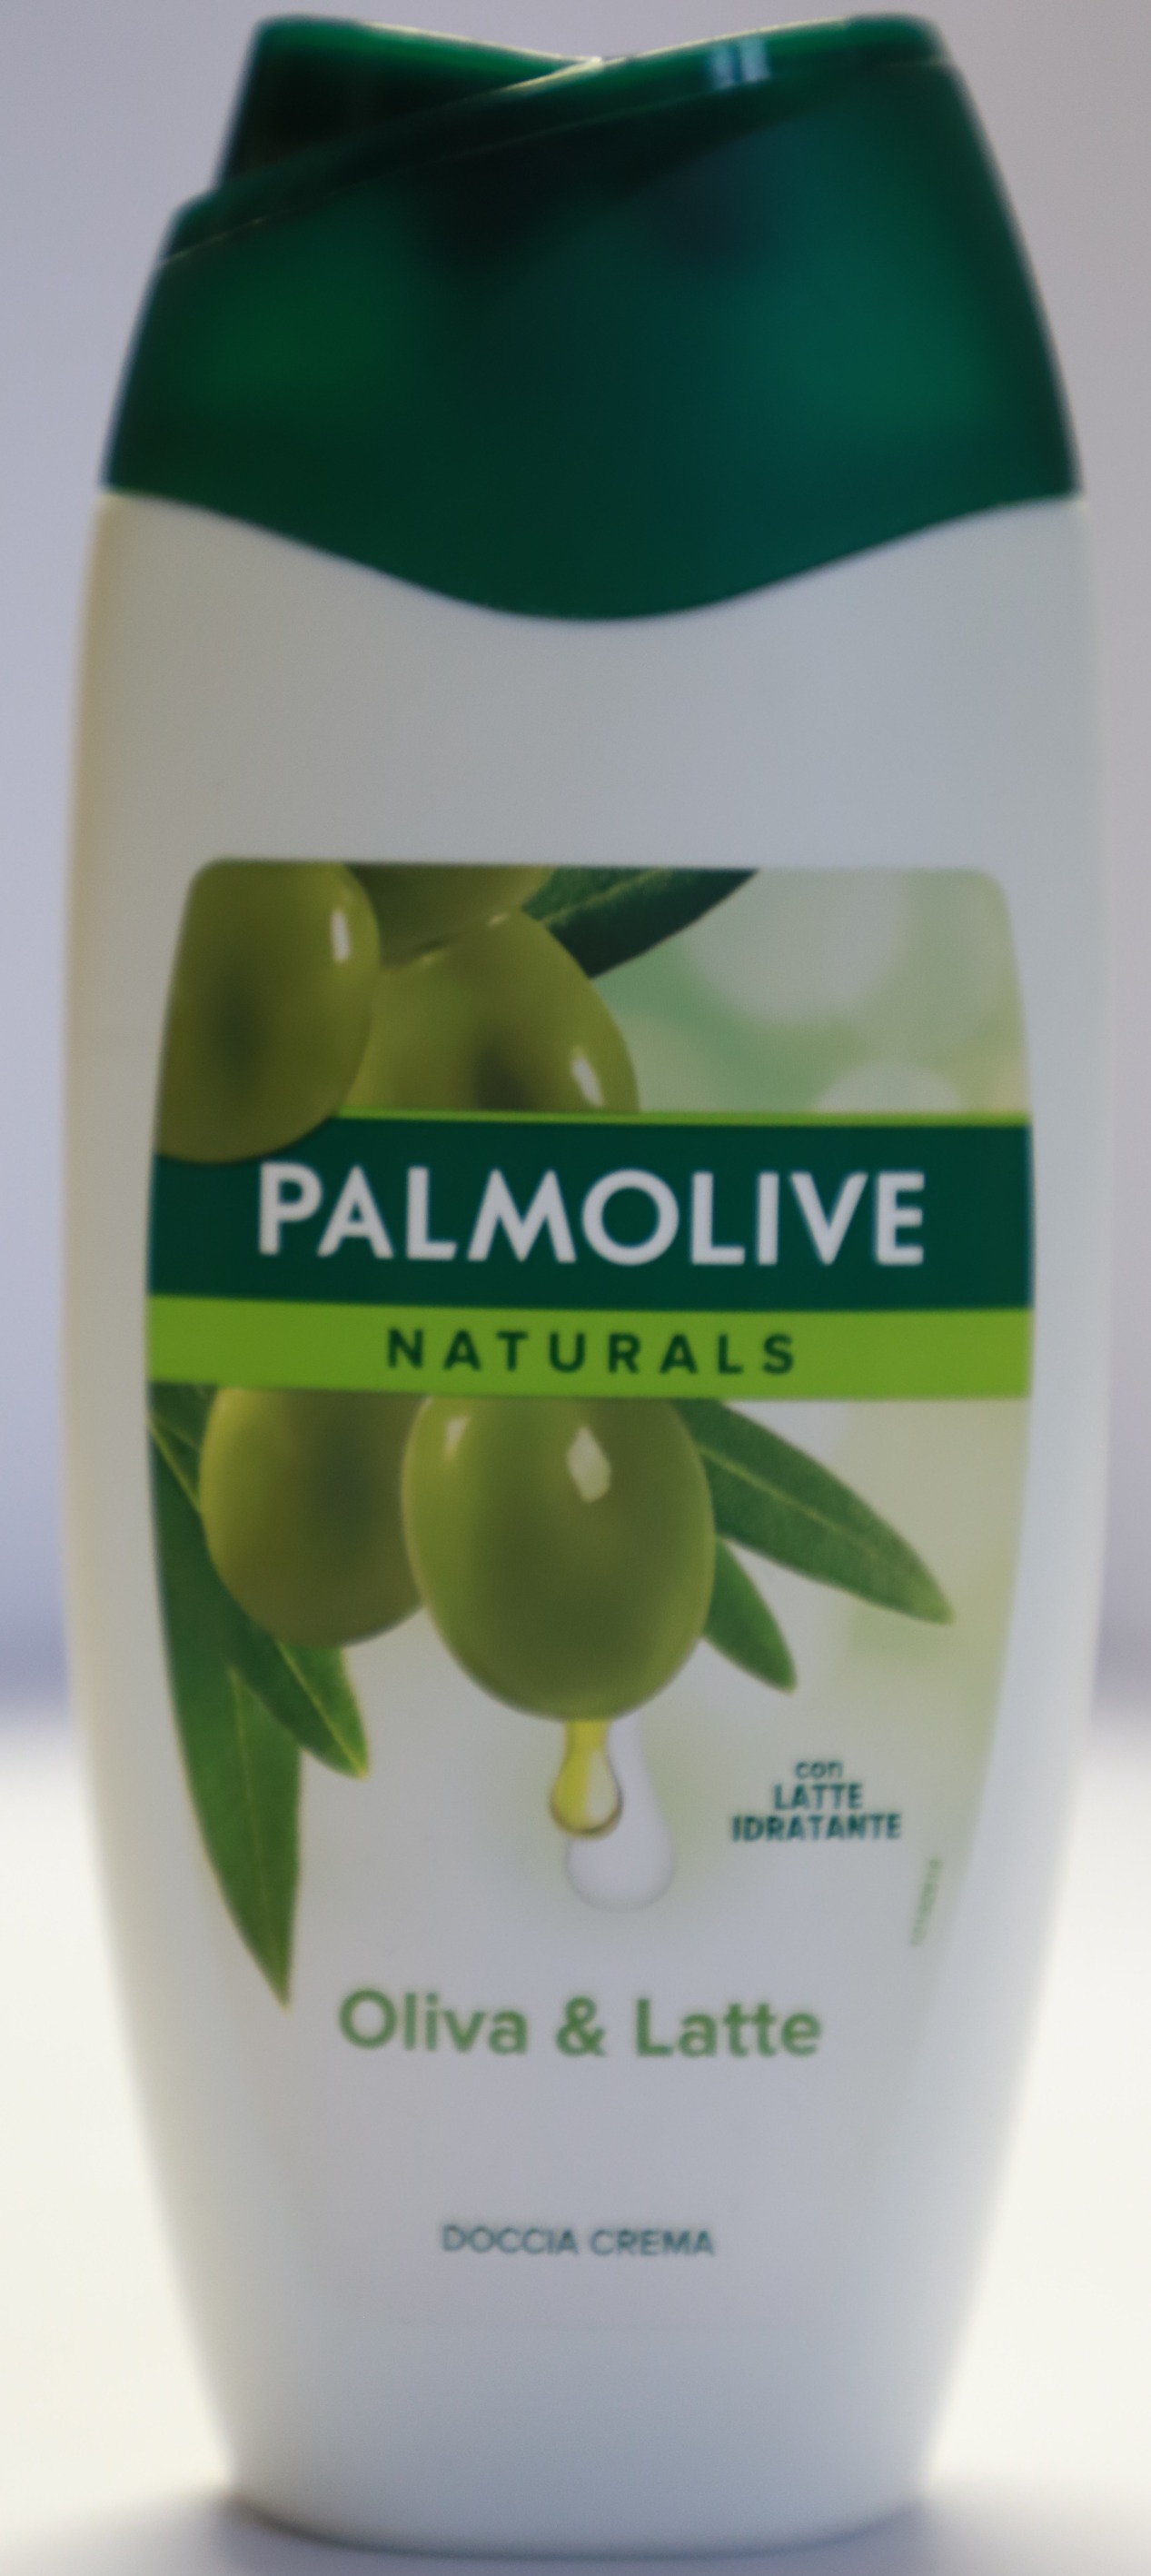 Palmolive naturals - oliva & latte – sprchový krém - foto prednej strany výrobku